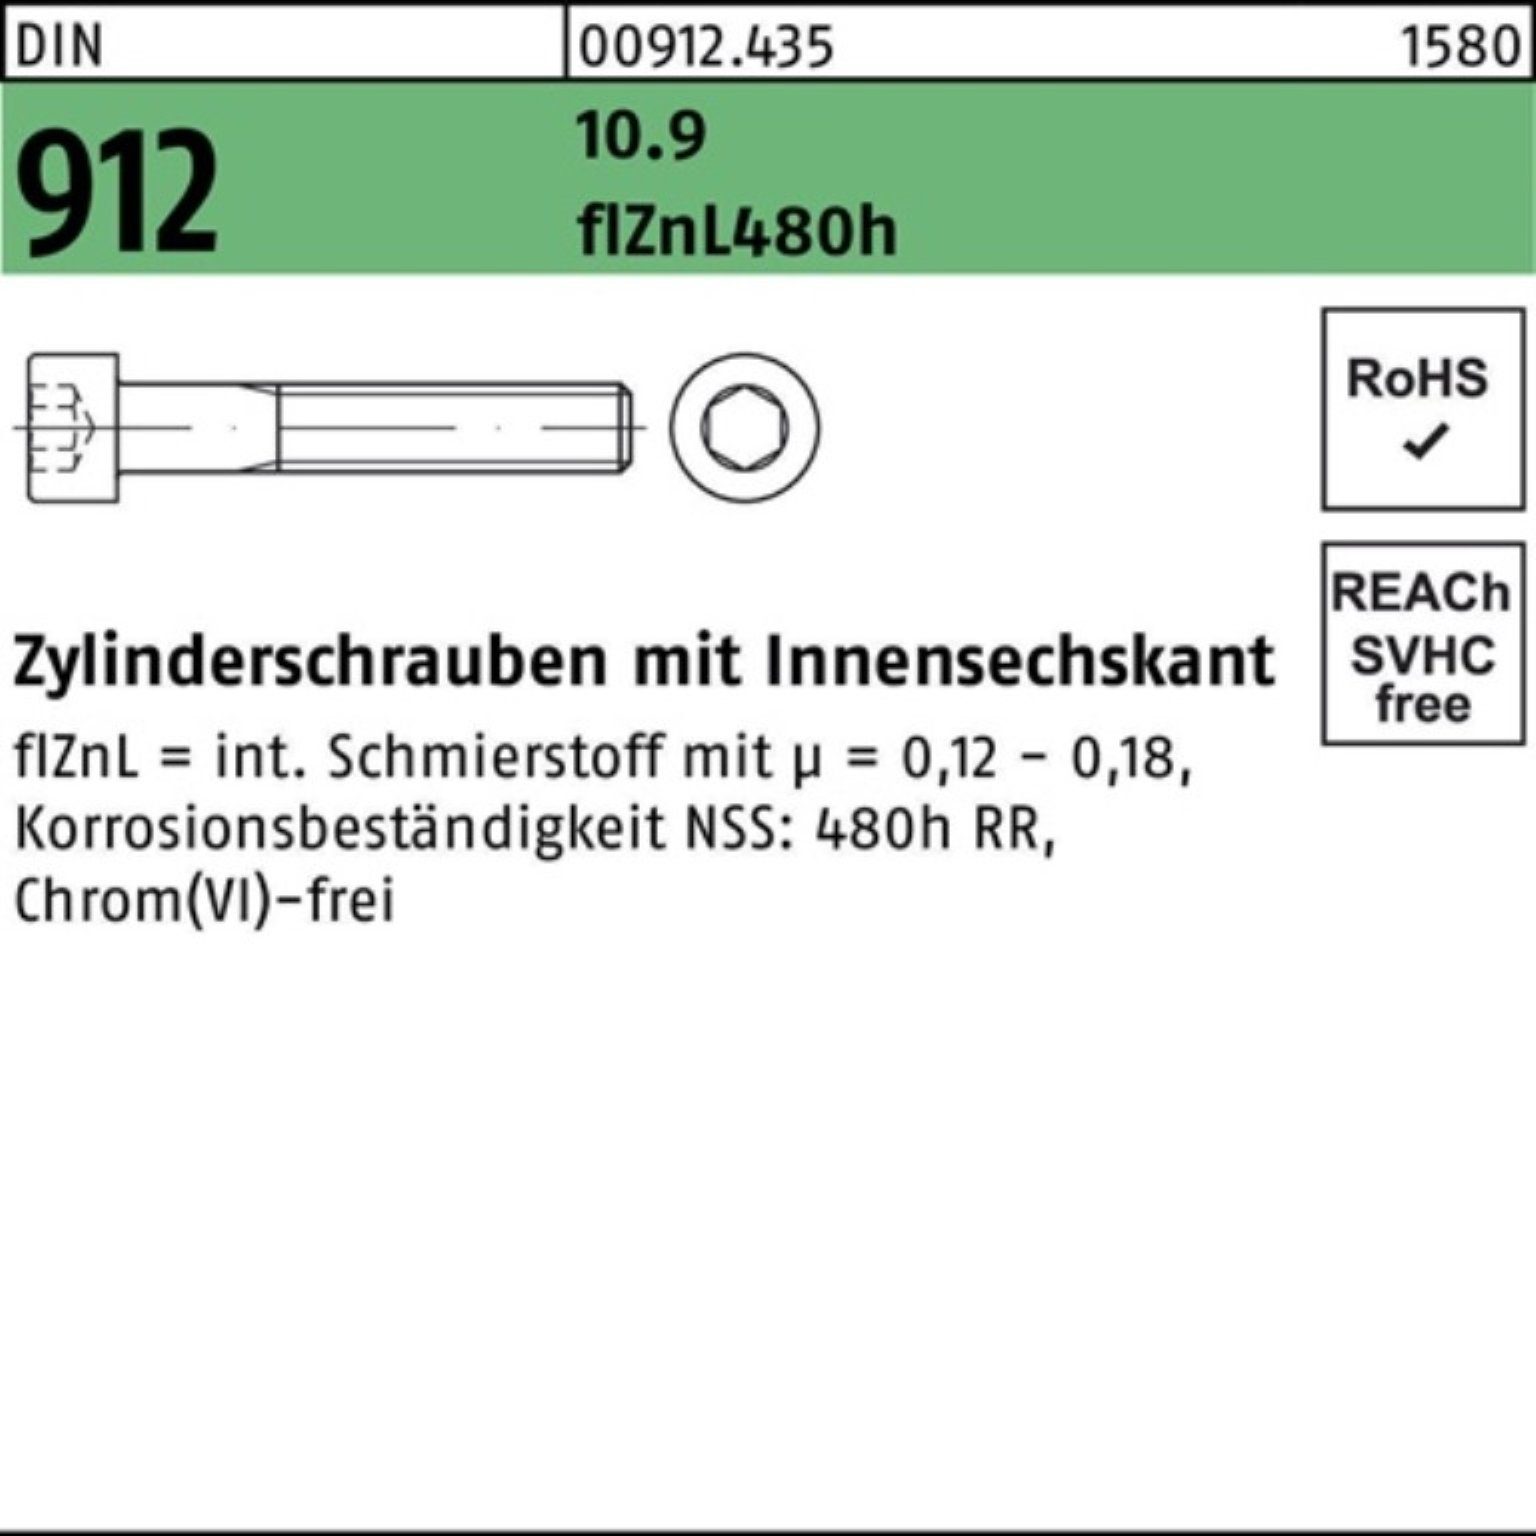 M16x30 Pack Reyher Zylinderschraube 100er 10.9 Zylinderschraube Innen-6kt flZnL/nc/x/x 912 DIN